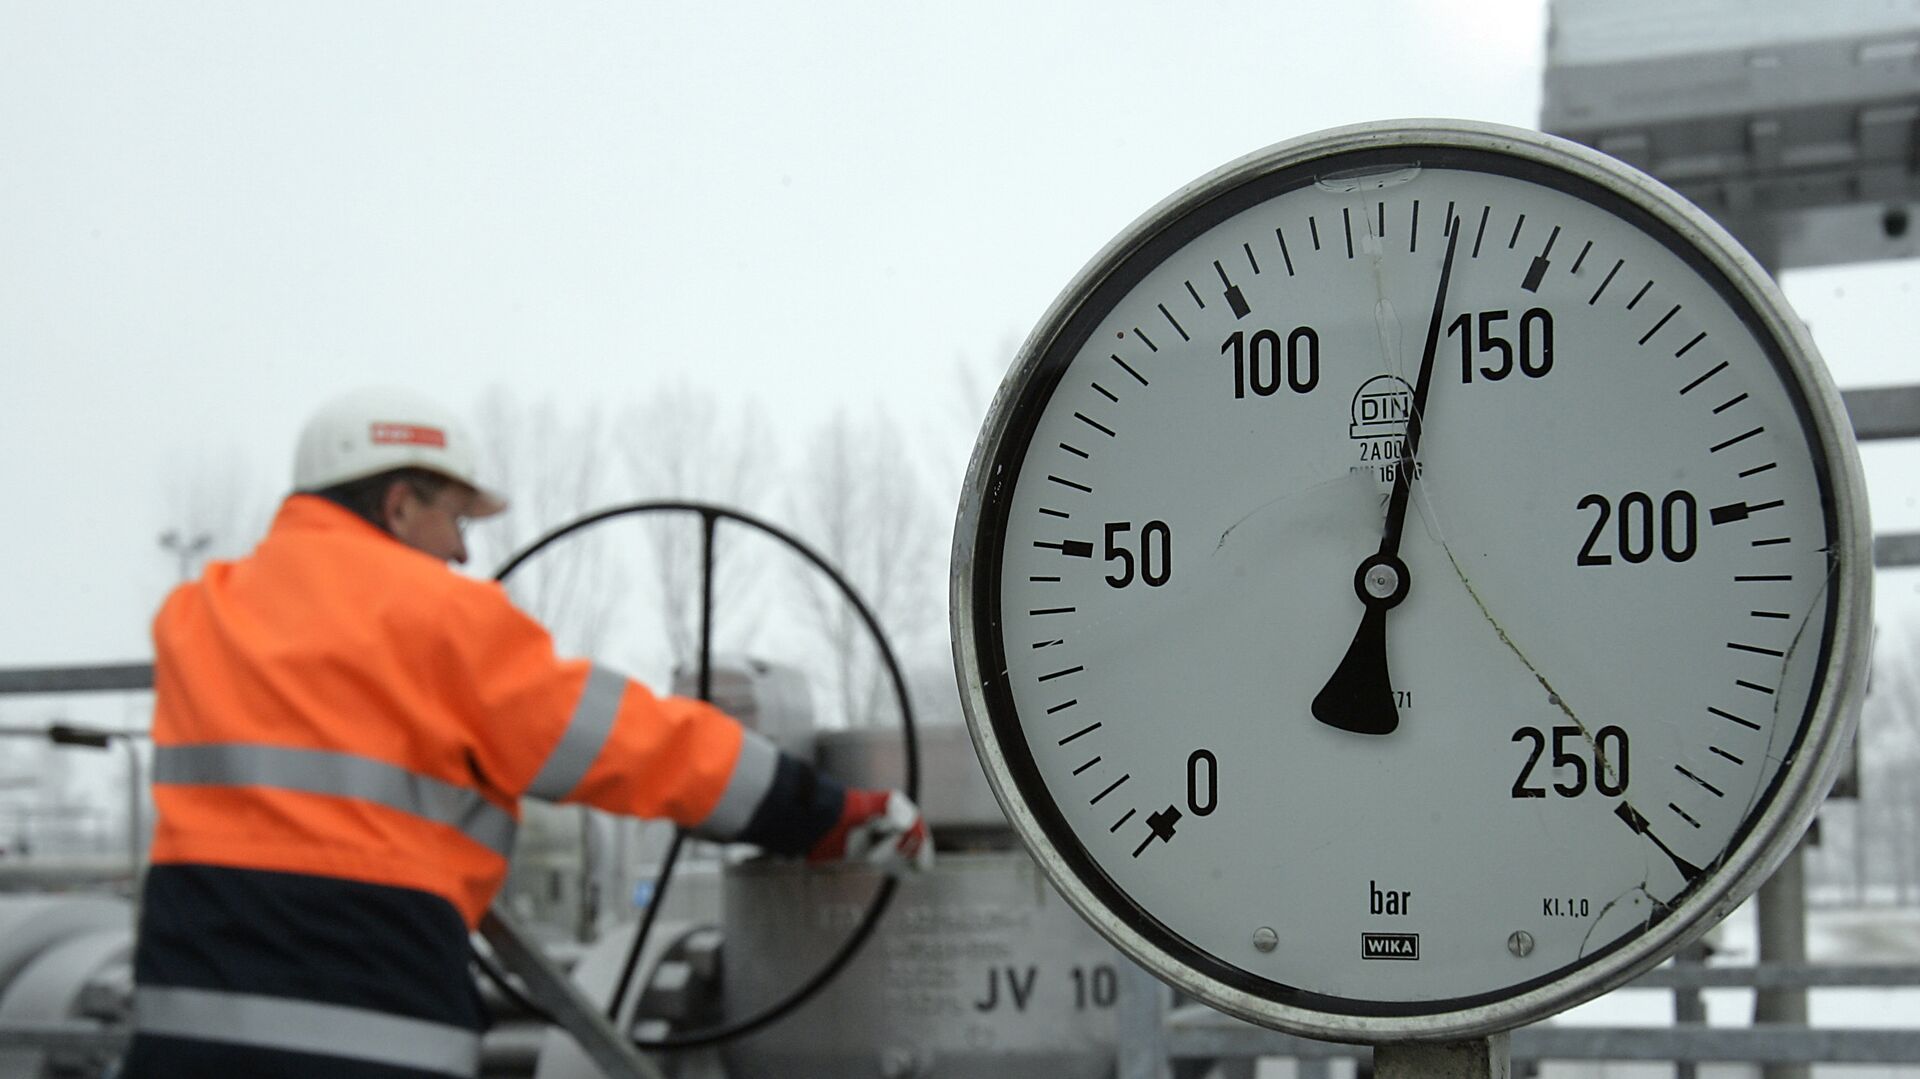 Заявки на транзит газа через Украину выросли